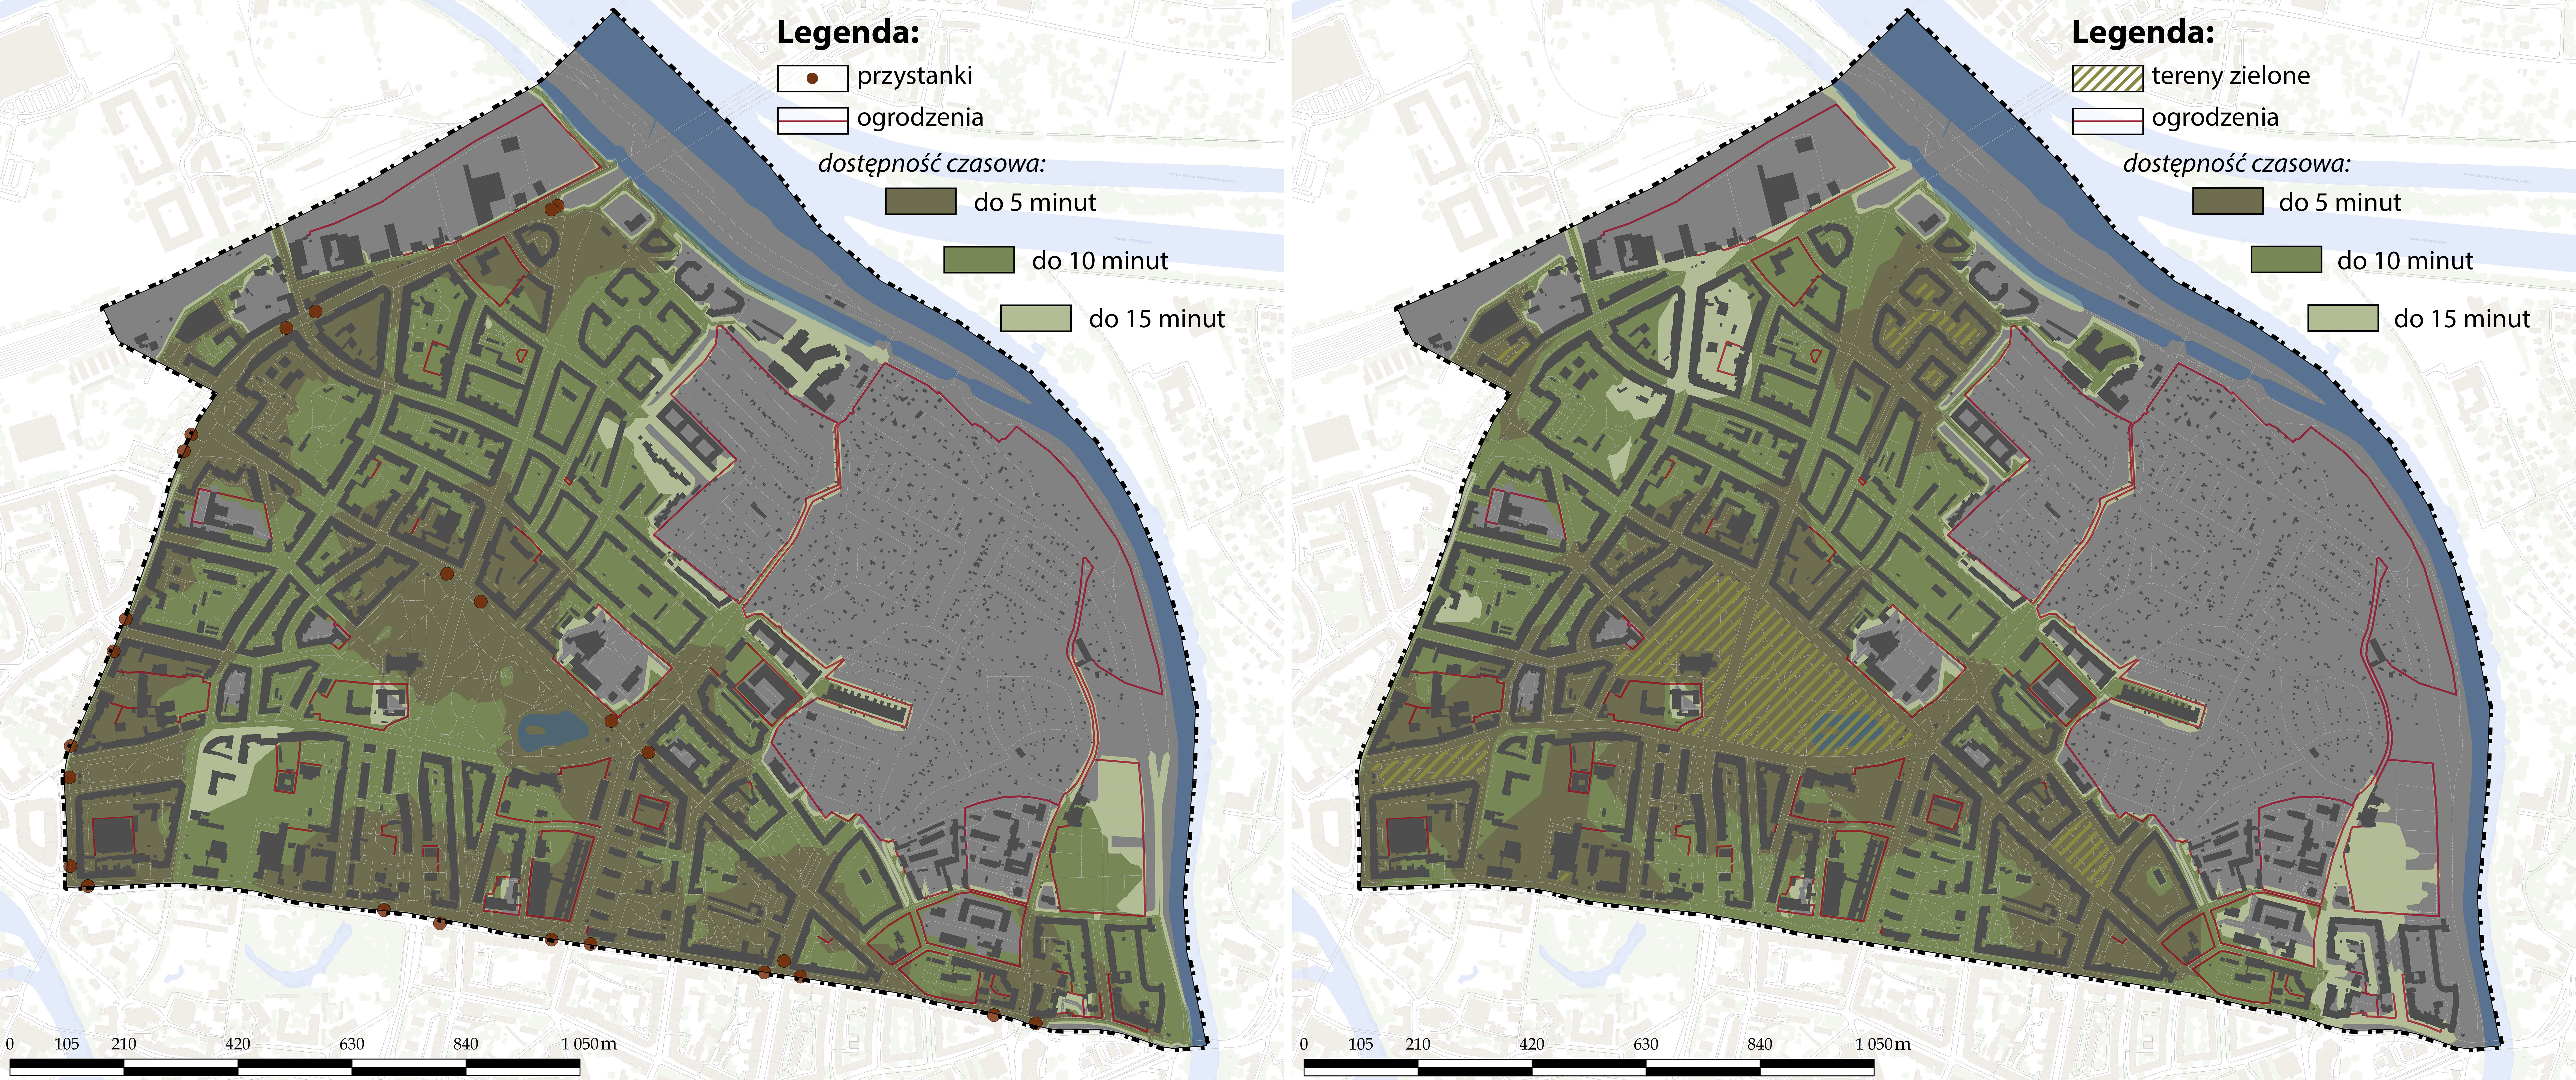 Rys. 4. Bufory czasowej dostępności (5, 10 i 15 min) przystanków (z lewej) i terenów zielonych (z prawej), z uwzględnieniem barier przestrzennych.